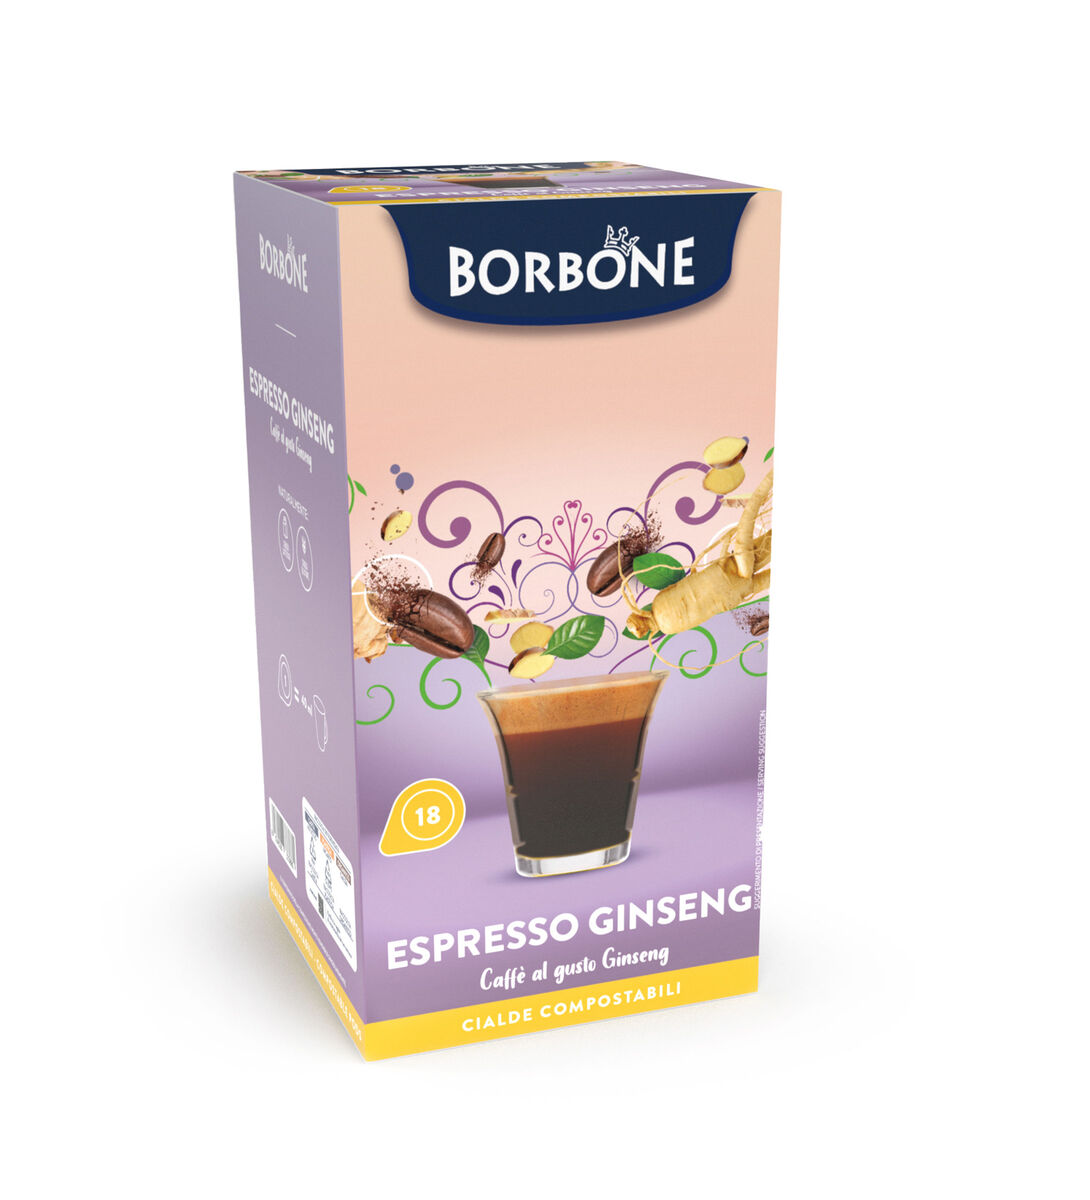 Caffè Borbone Capsule per Dolcegusto Espresso D'Orzo Capsule caffe 16 pz, Capsule per macchine Dolce Gusto in Offerta su Stay On